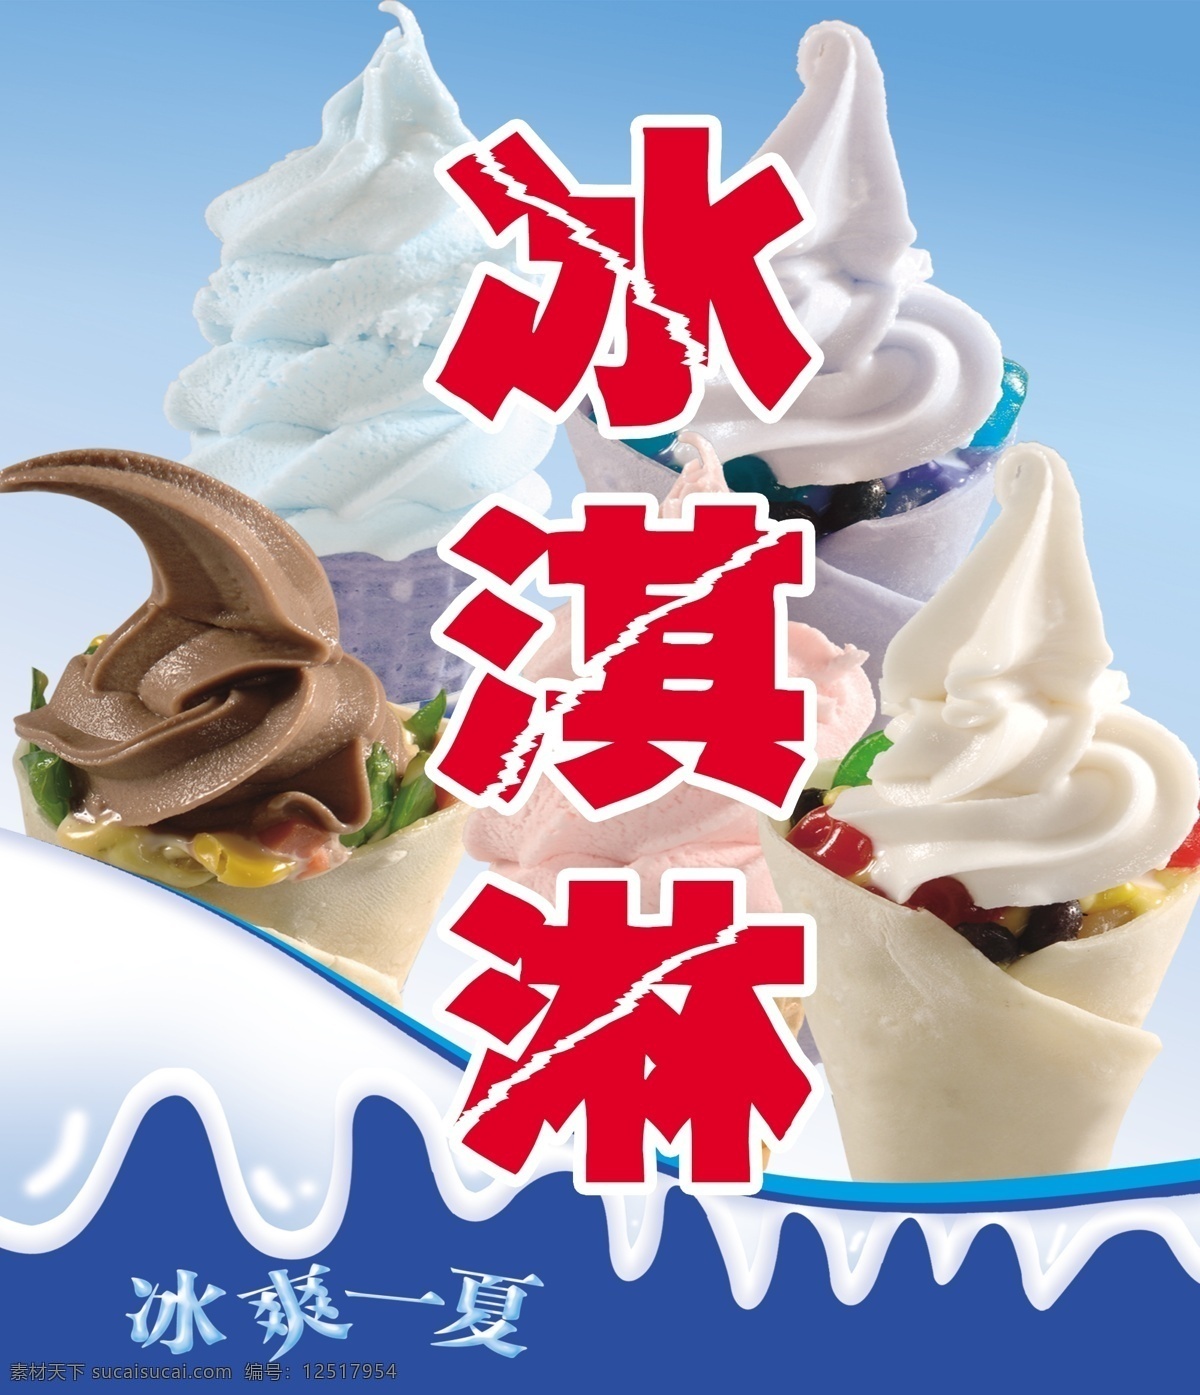 冰淇淋 冰爽一夏 淡蓝图 雪融化 小吃版面